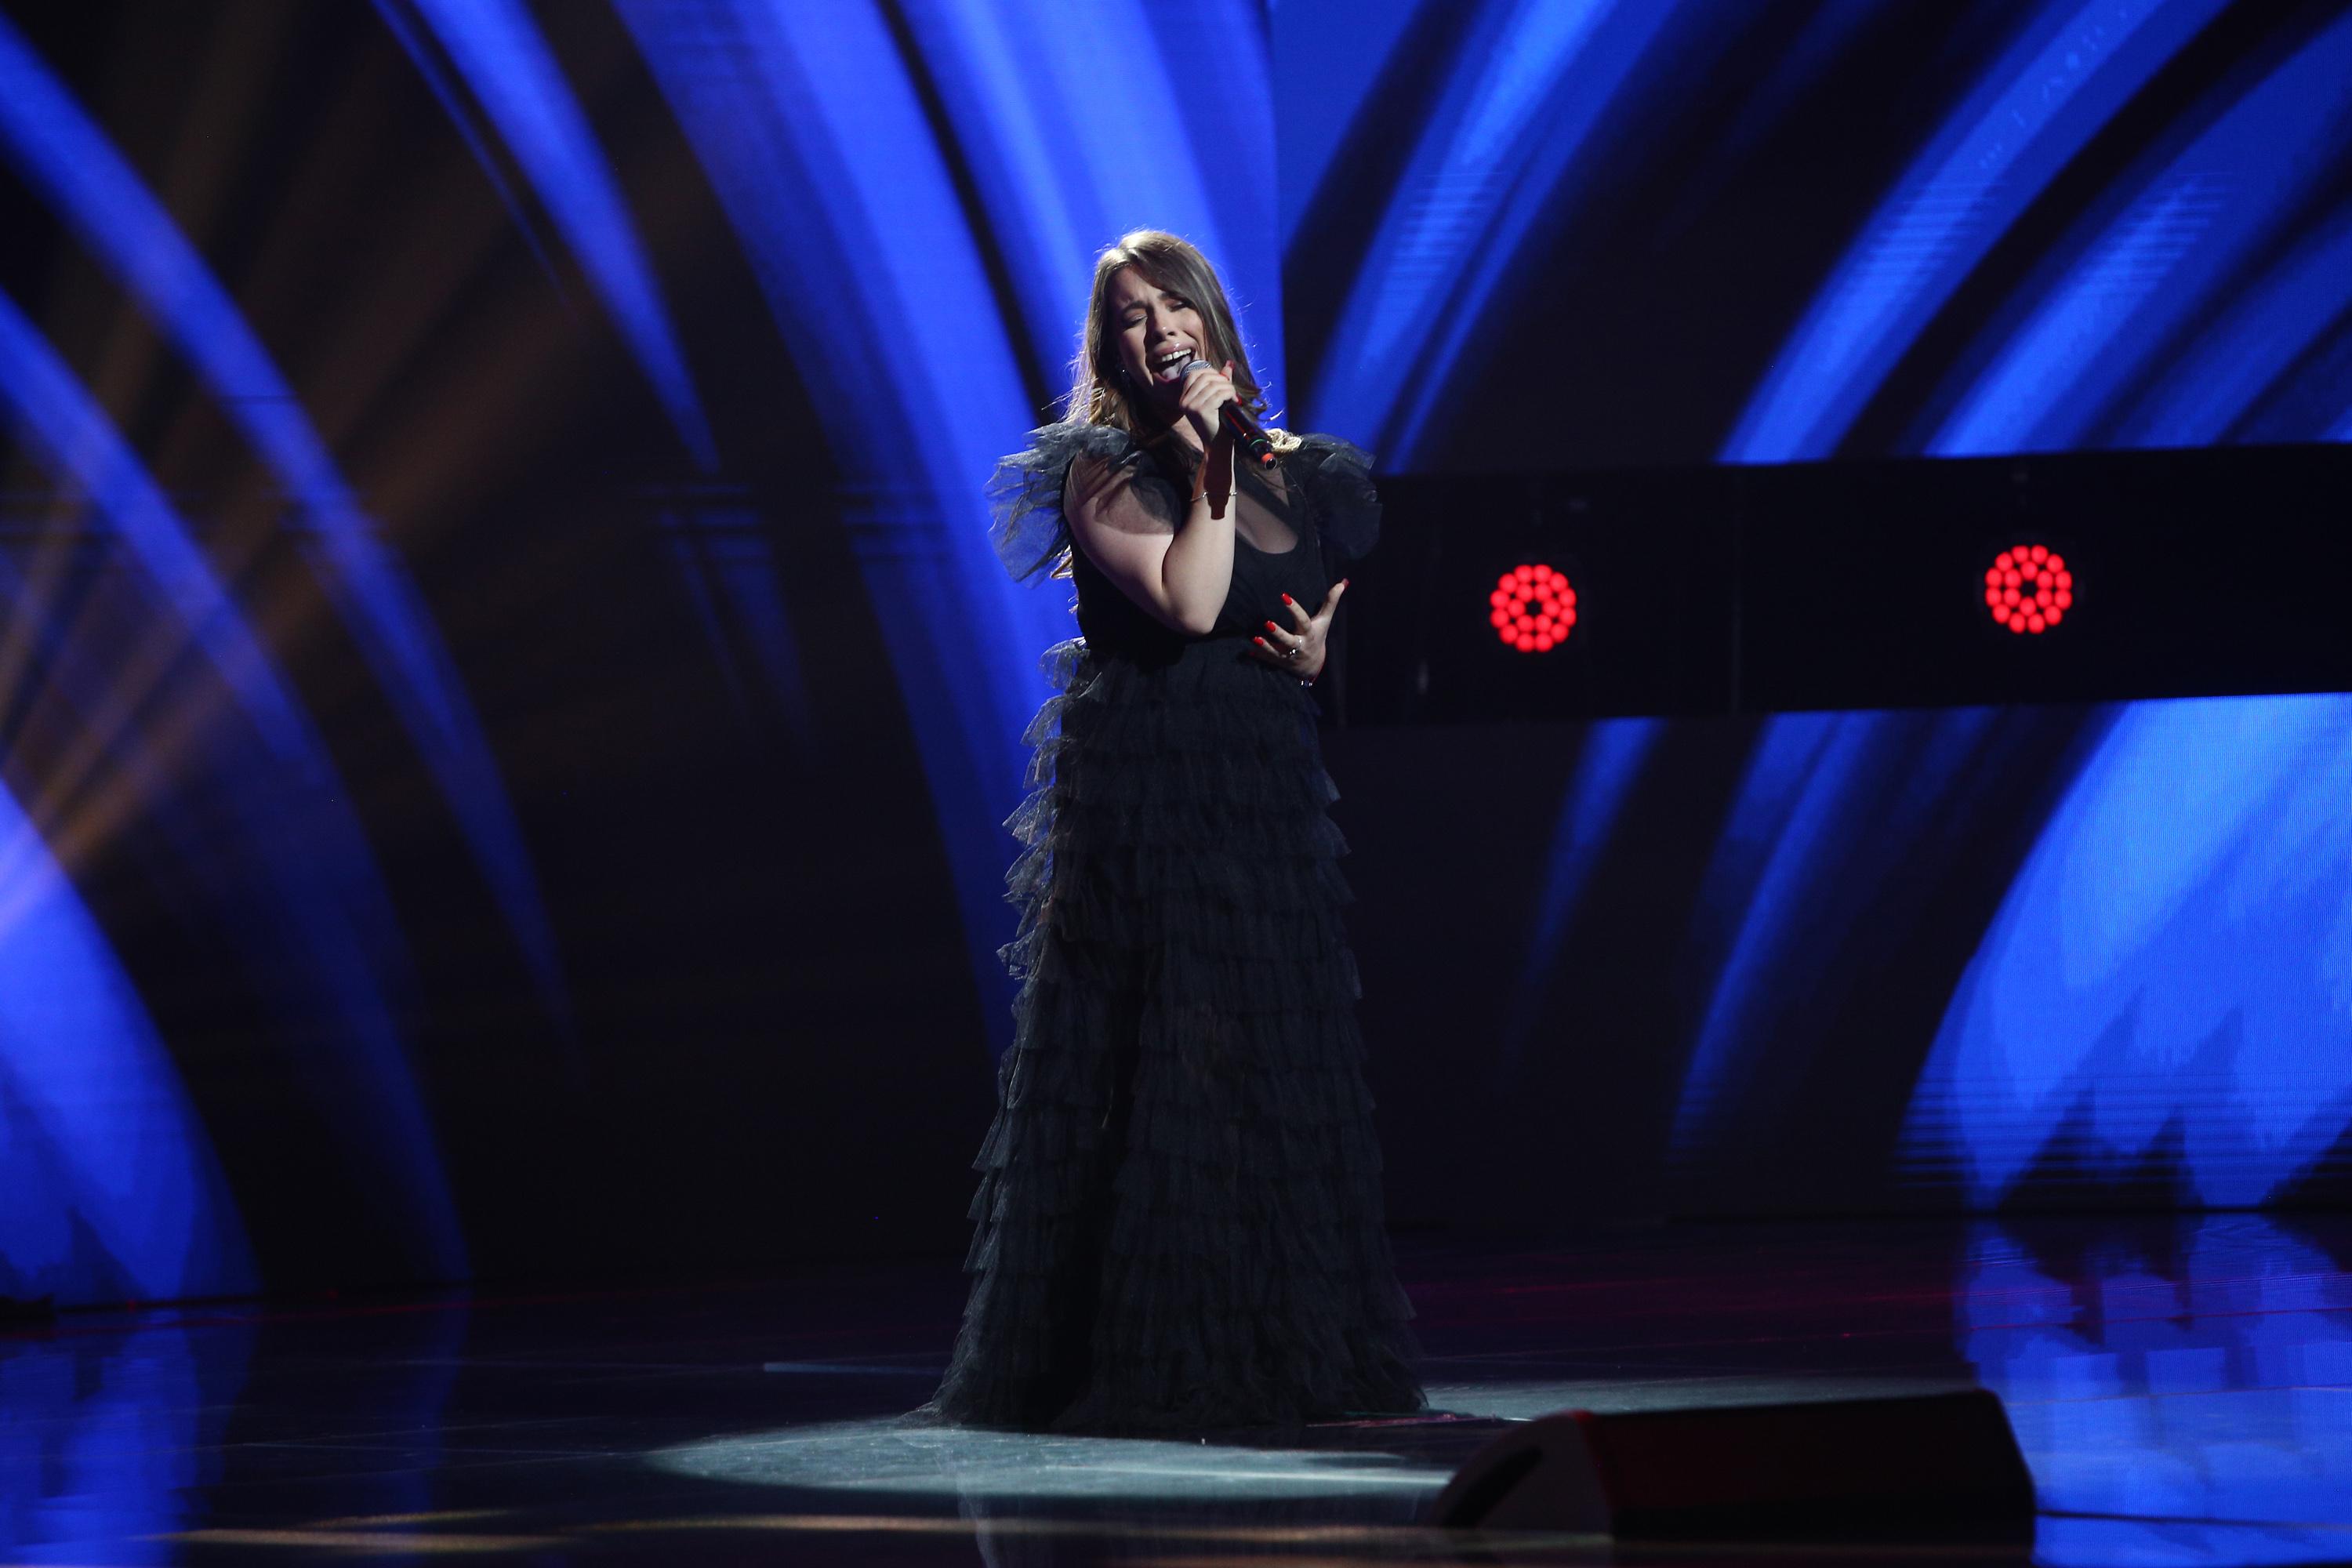 X Factor 2020, Semifinală. Alexandra Sîrghi, semifinalista lui Ștefan Bănică, a transmis emoție pură cu piesa "Hurt"